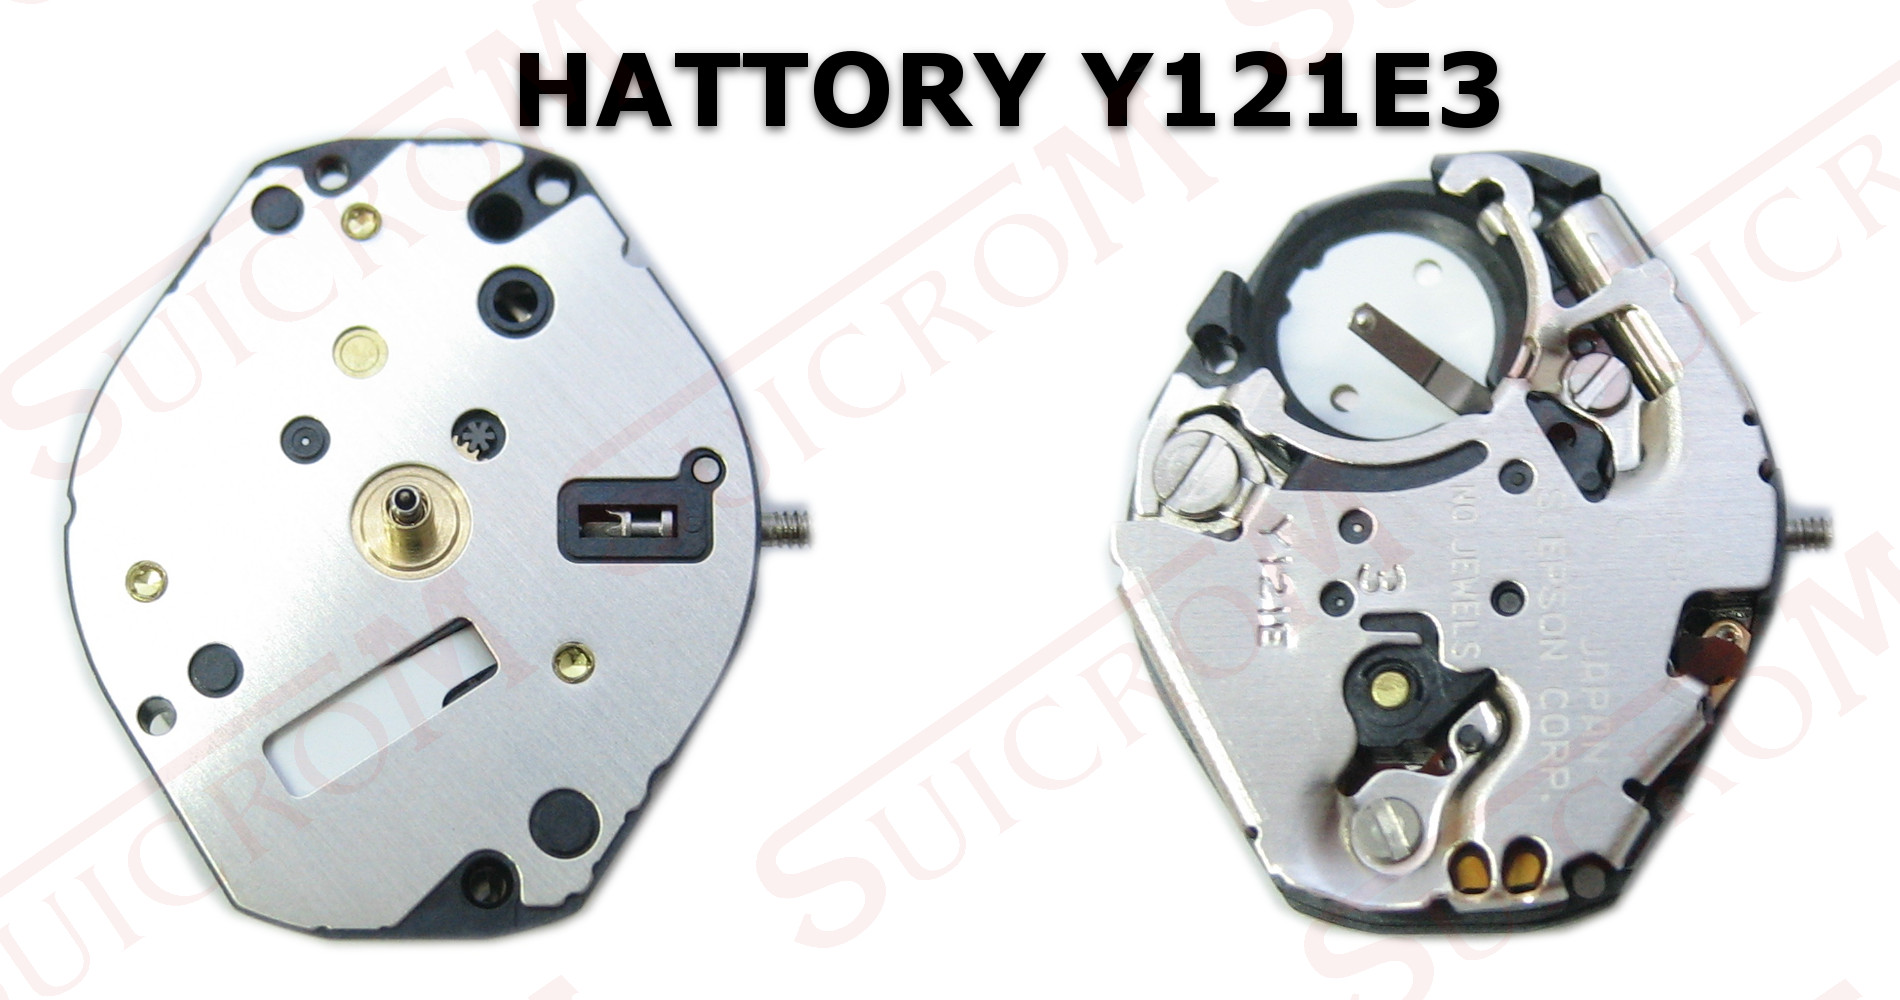 Movimiento Hattory Y121e3